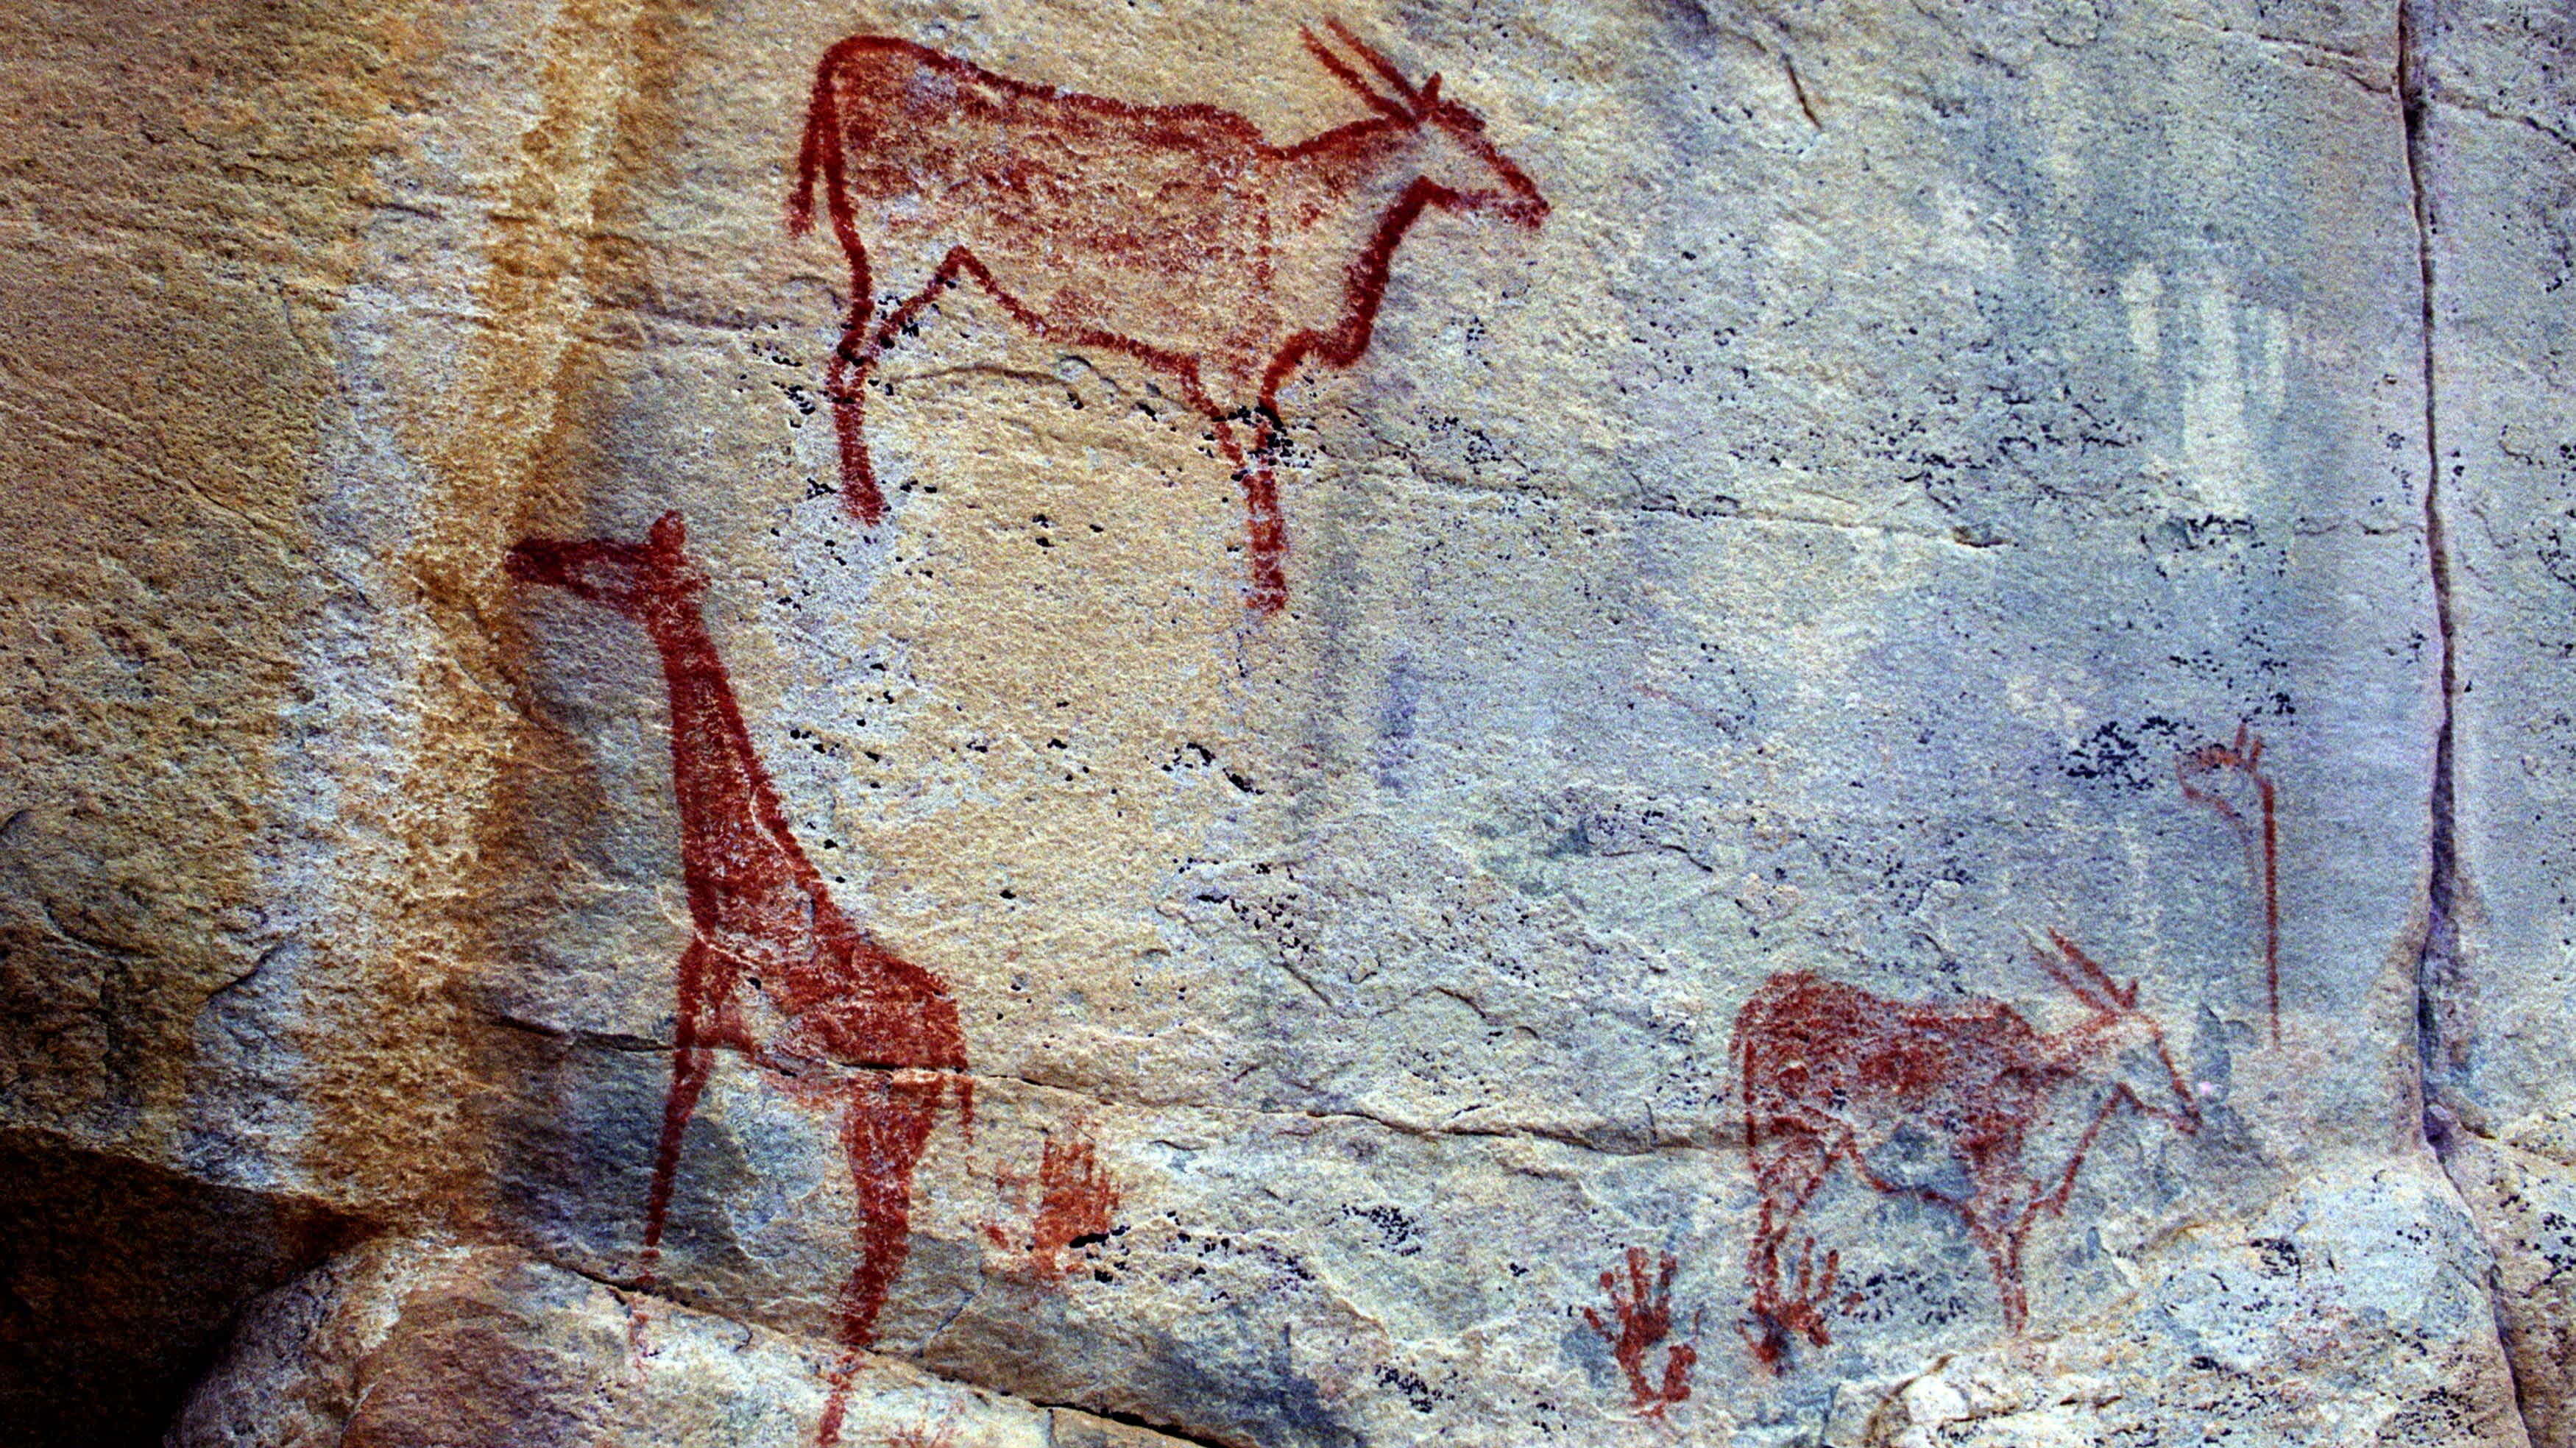 Felsmalerei in den Tsodilo Hills, Botswana. Die Malereien werden dem Volk der San zugeschrieben. Die Tsodilo Hills sind ein UNESCO-Weltkulturerbe und bestehen aus Felszeichnungen, Unterständen, Vertiefungen und Höhlen